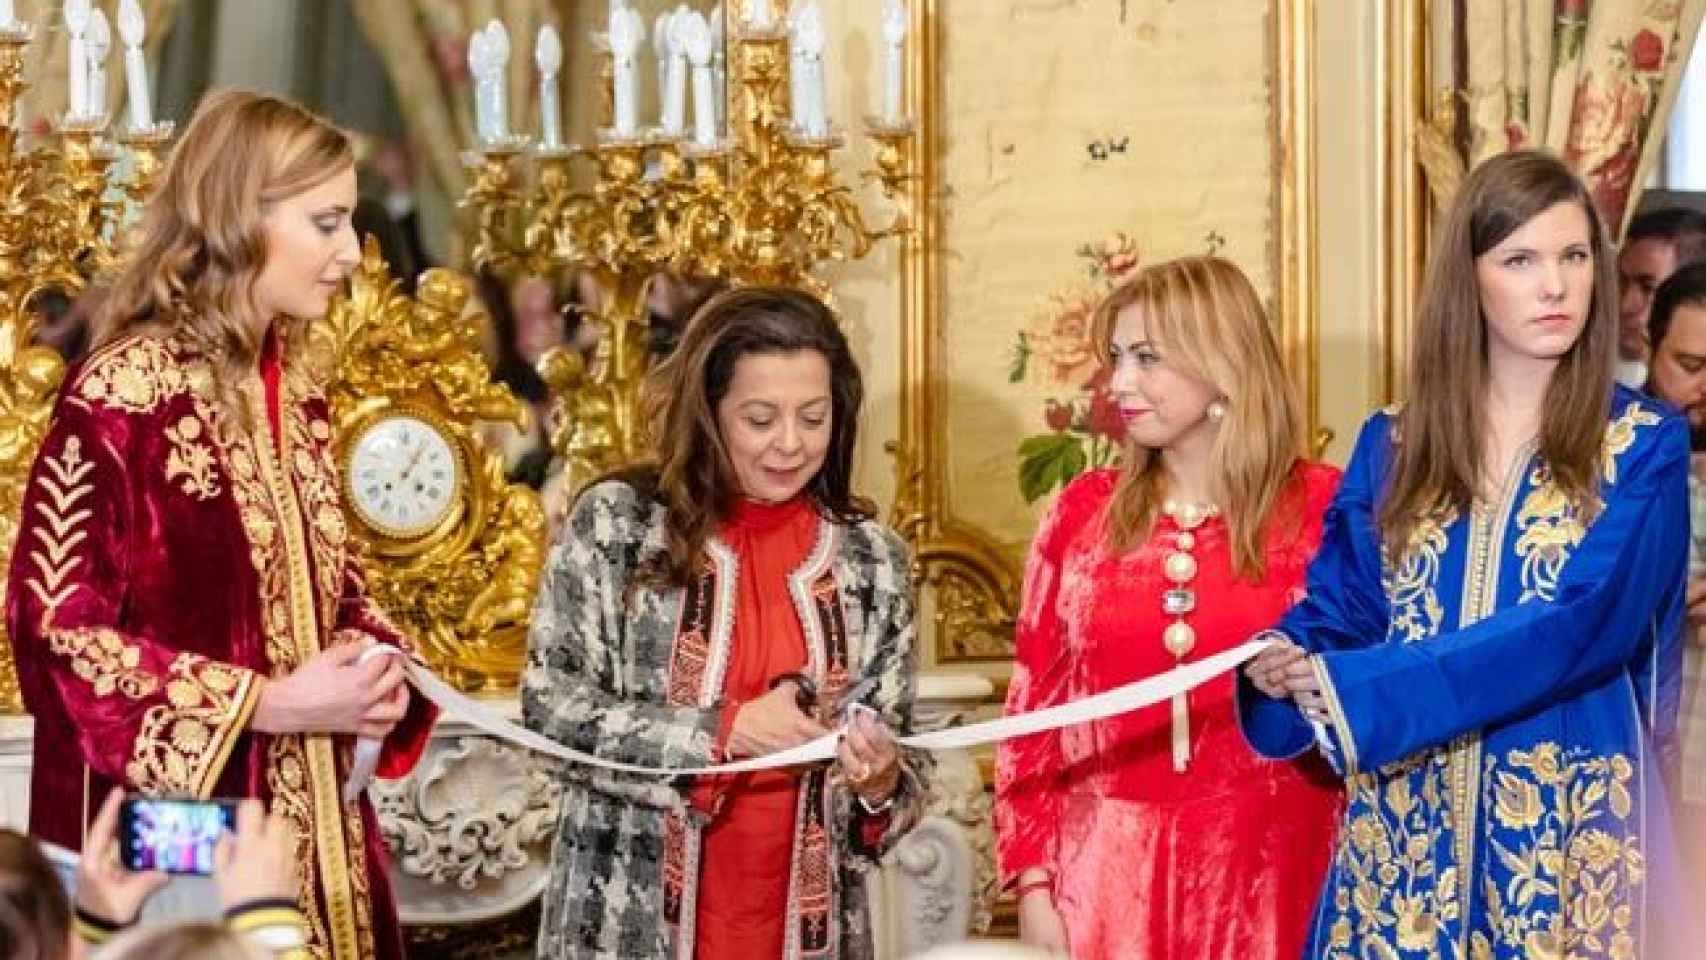 La embajadora de Marruecos en España, Karima Benyaich, inauguró el evento.